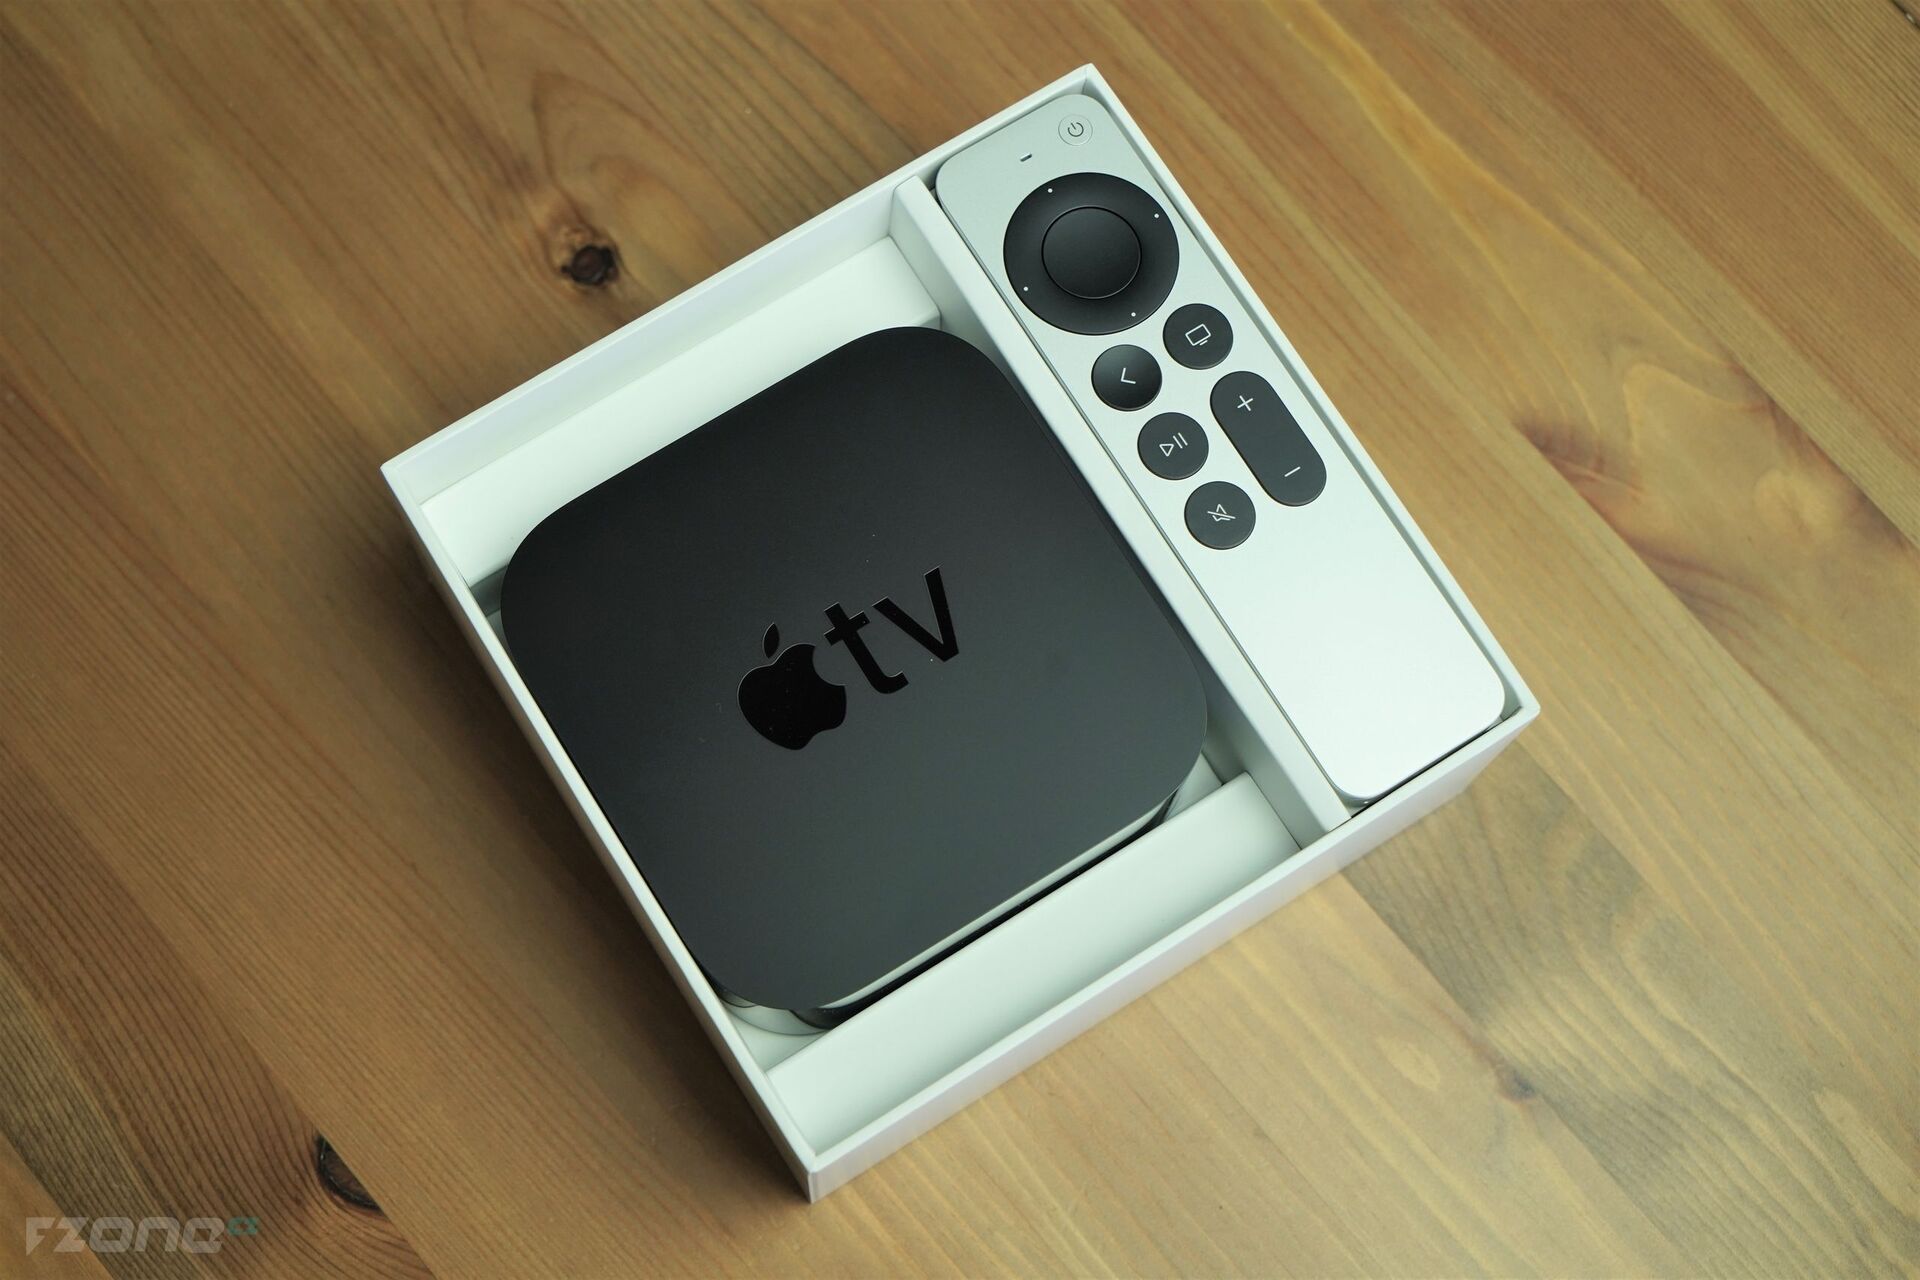 Apple TV 4K (2021)